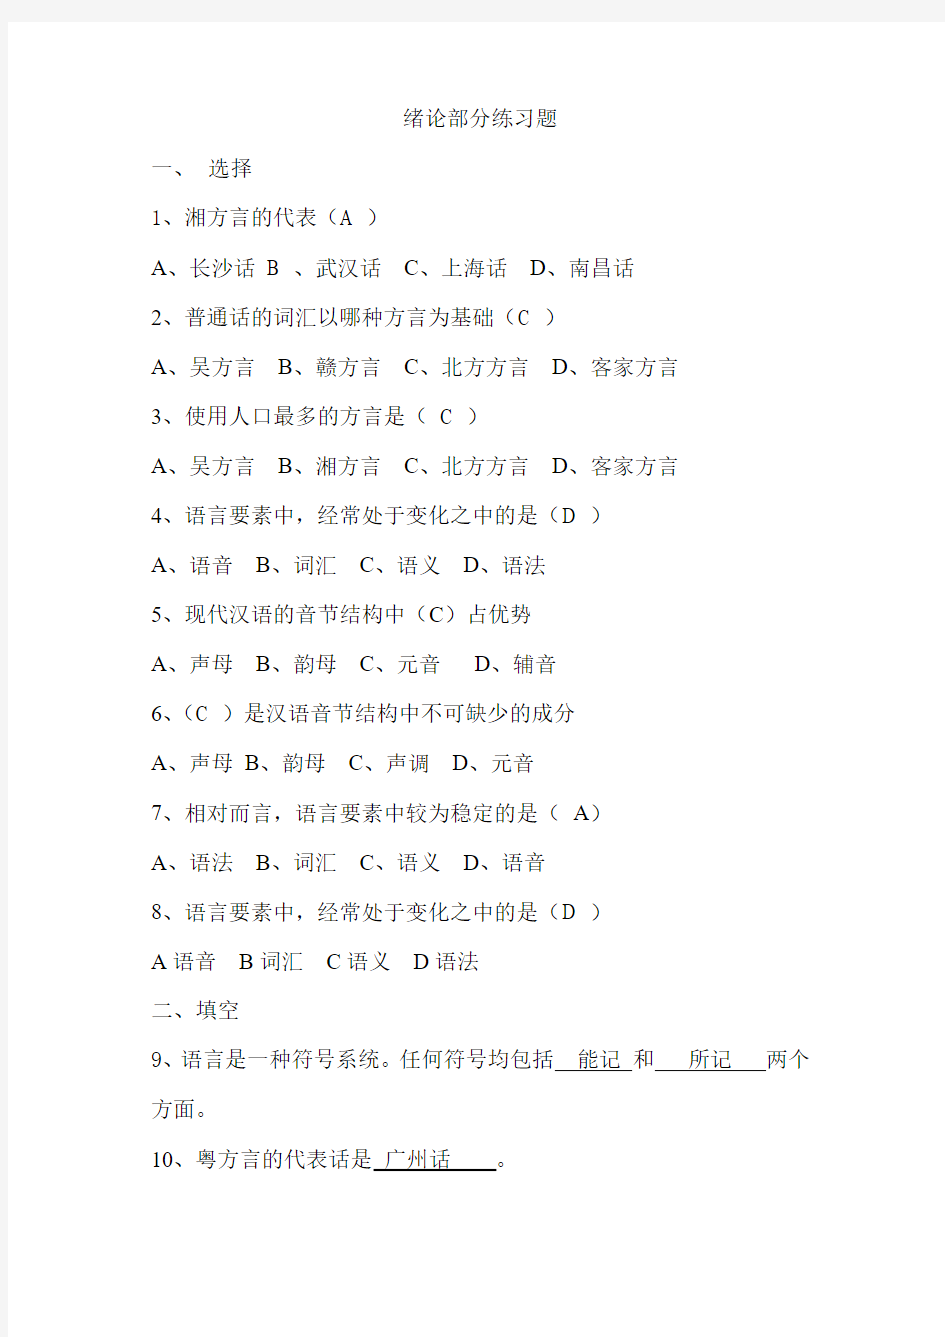 现代汉语练习题(同名18447)